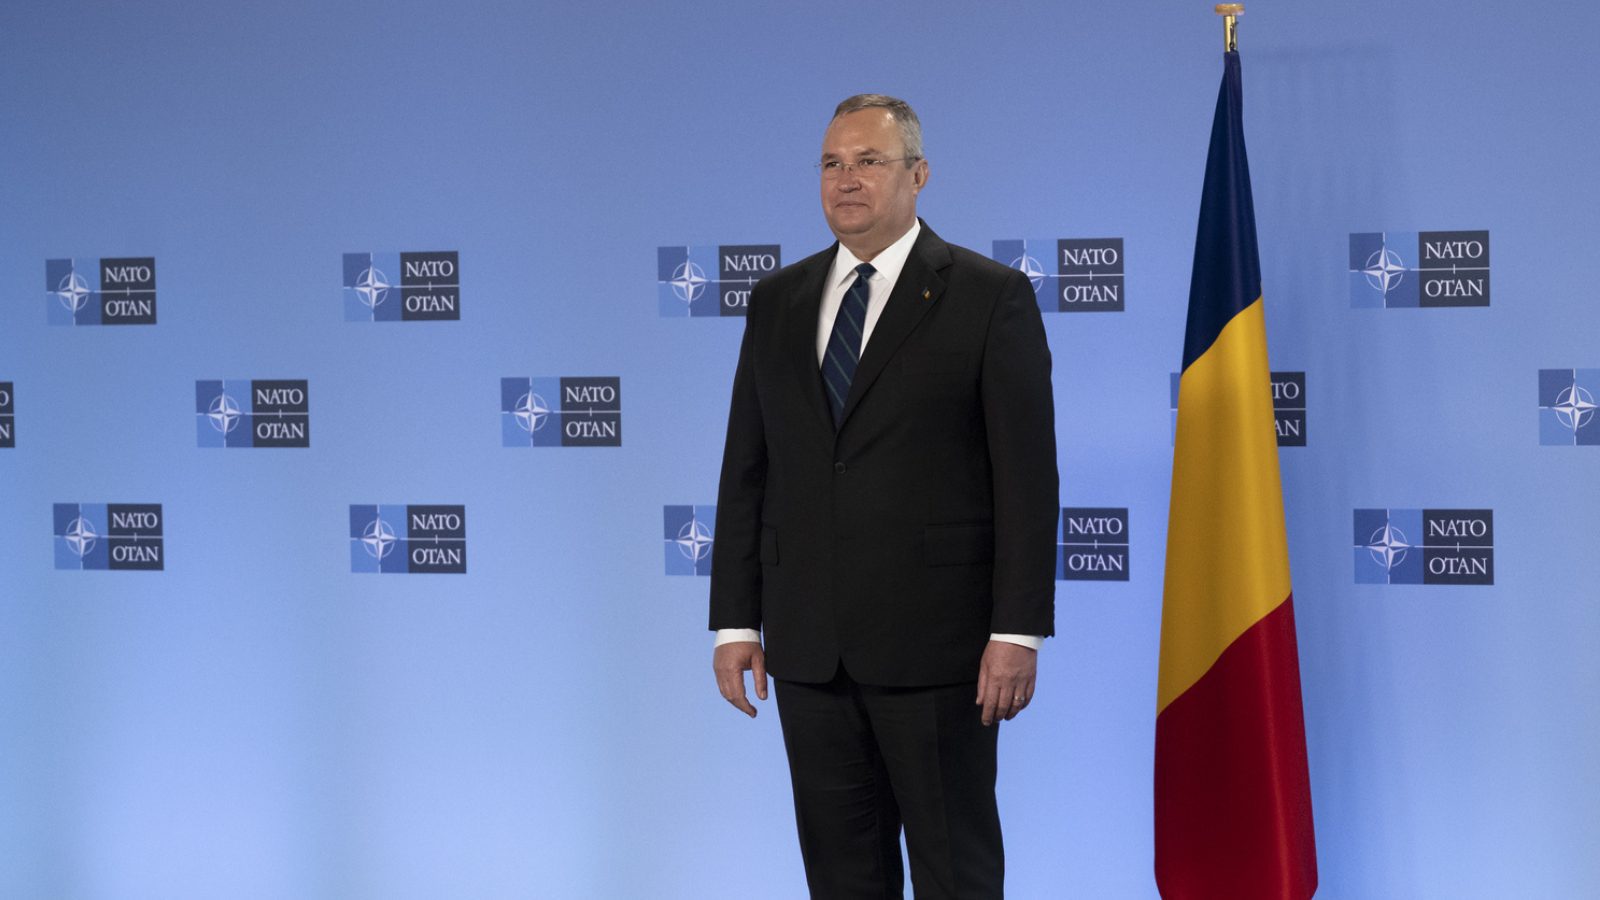 Премьер-министр Румынии назначил помощника по искусственному интеллекту «Иона» в качестве нового почетного советника по сбору мнений и желаний...